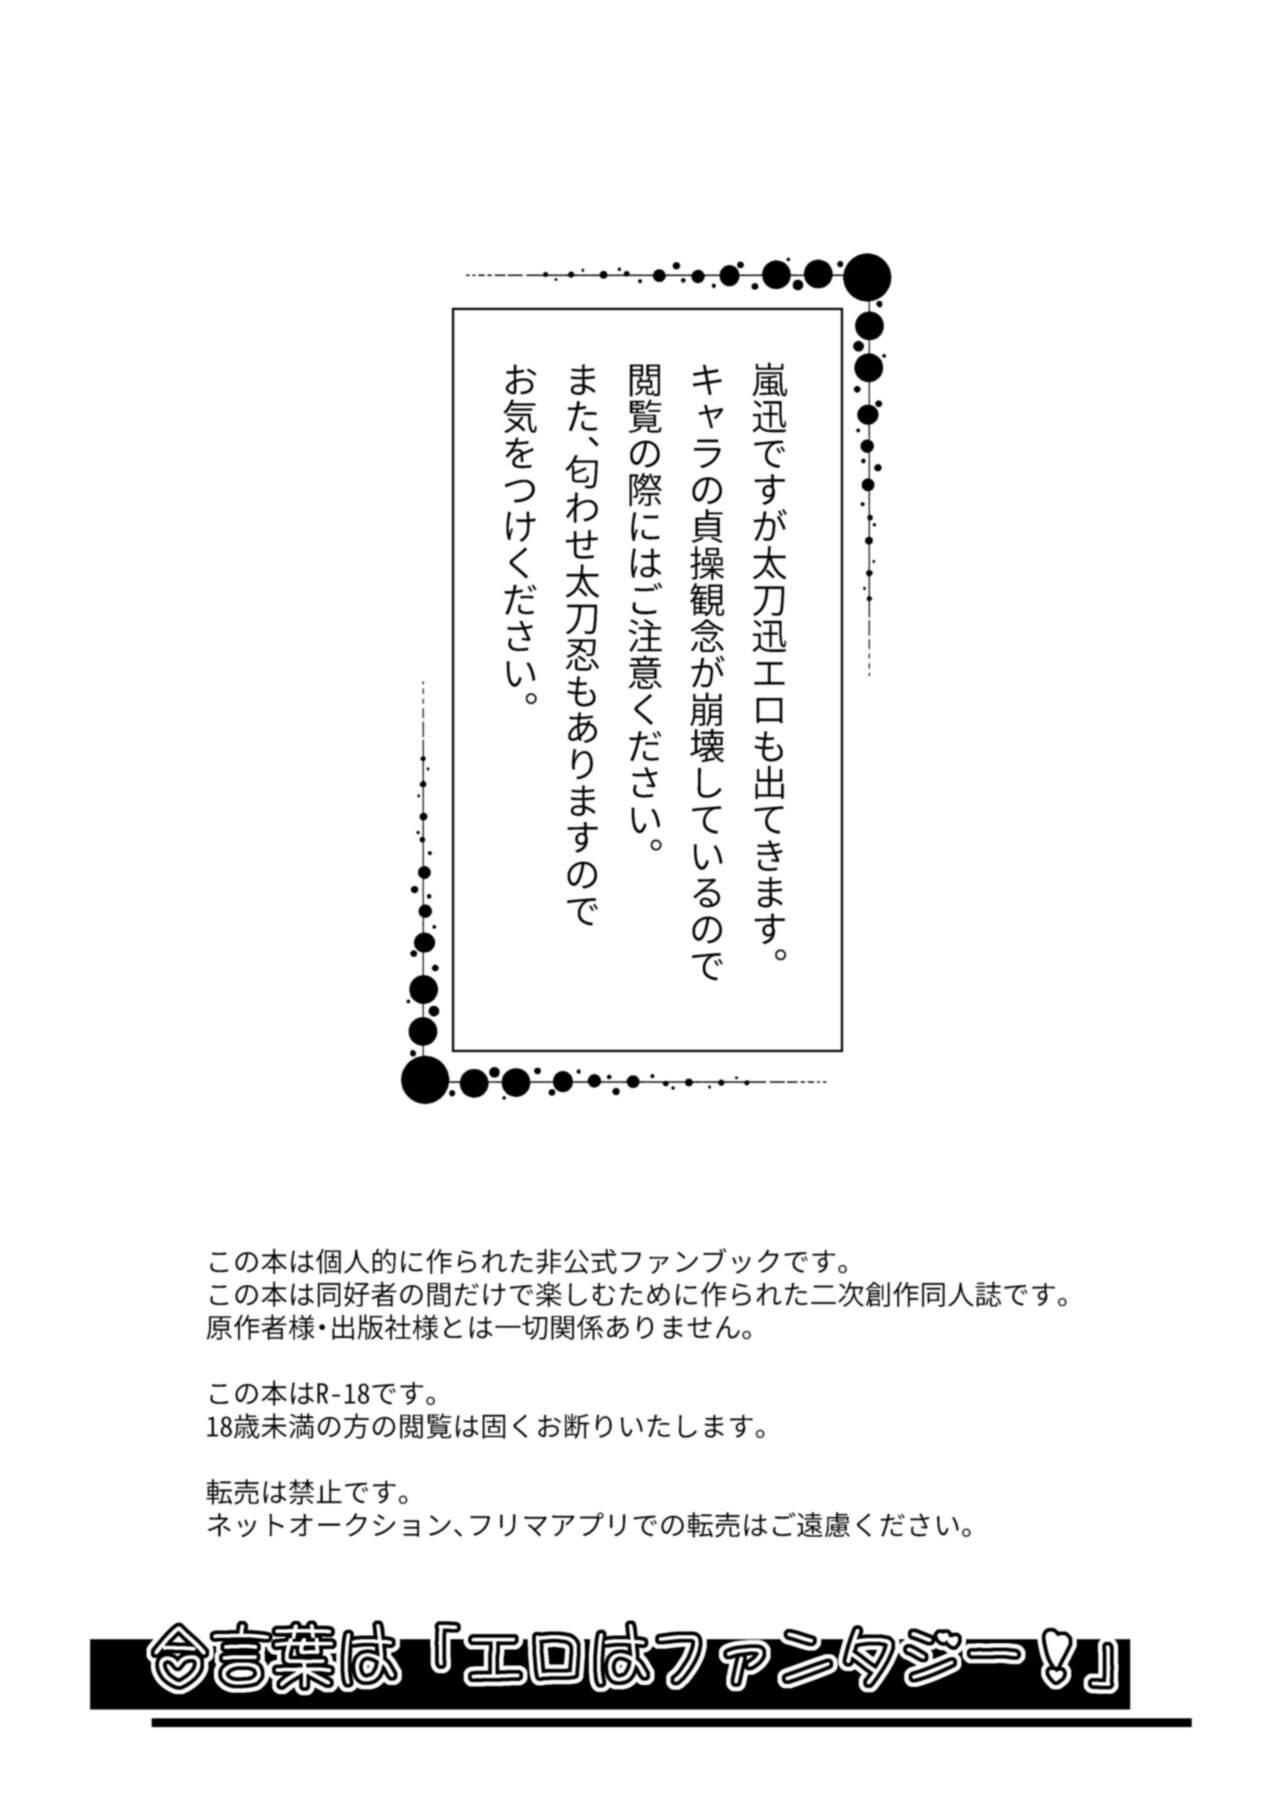 And Mirai Sentaku no Jiyuu - World trigger Price - Page 3